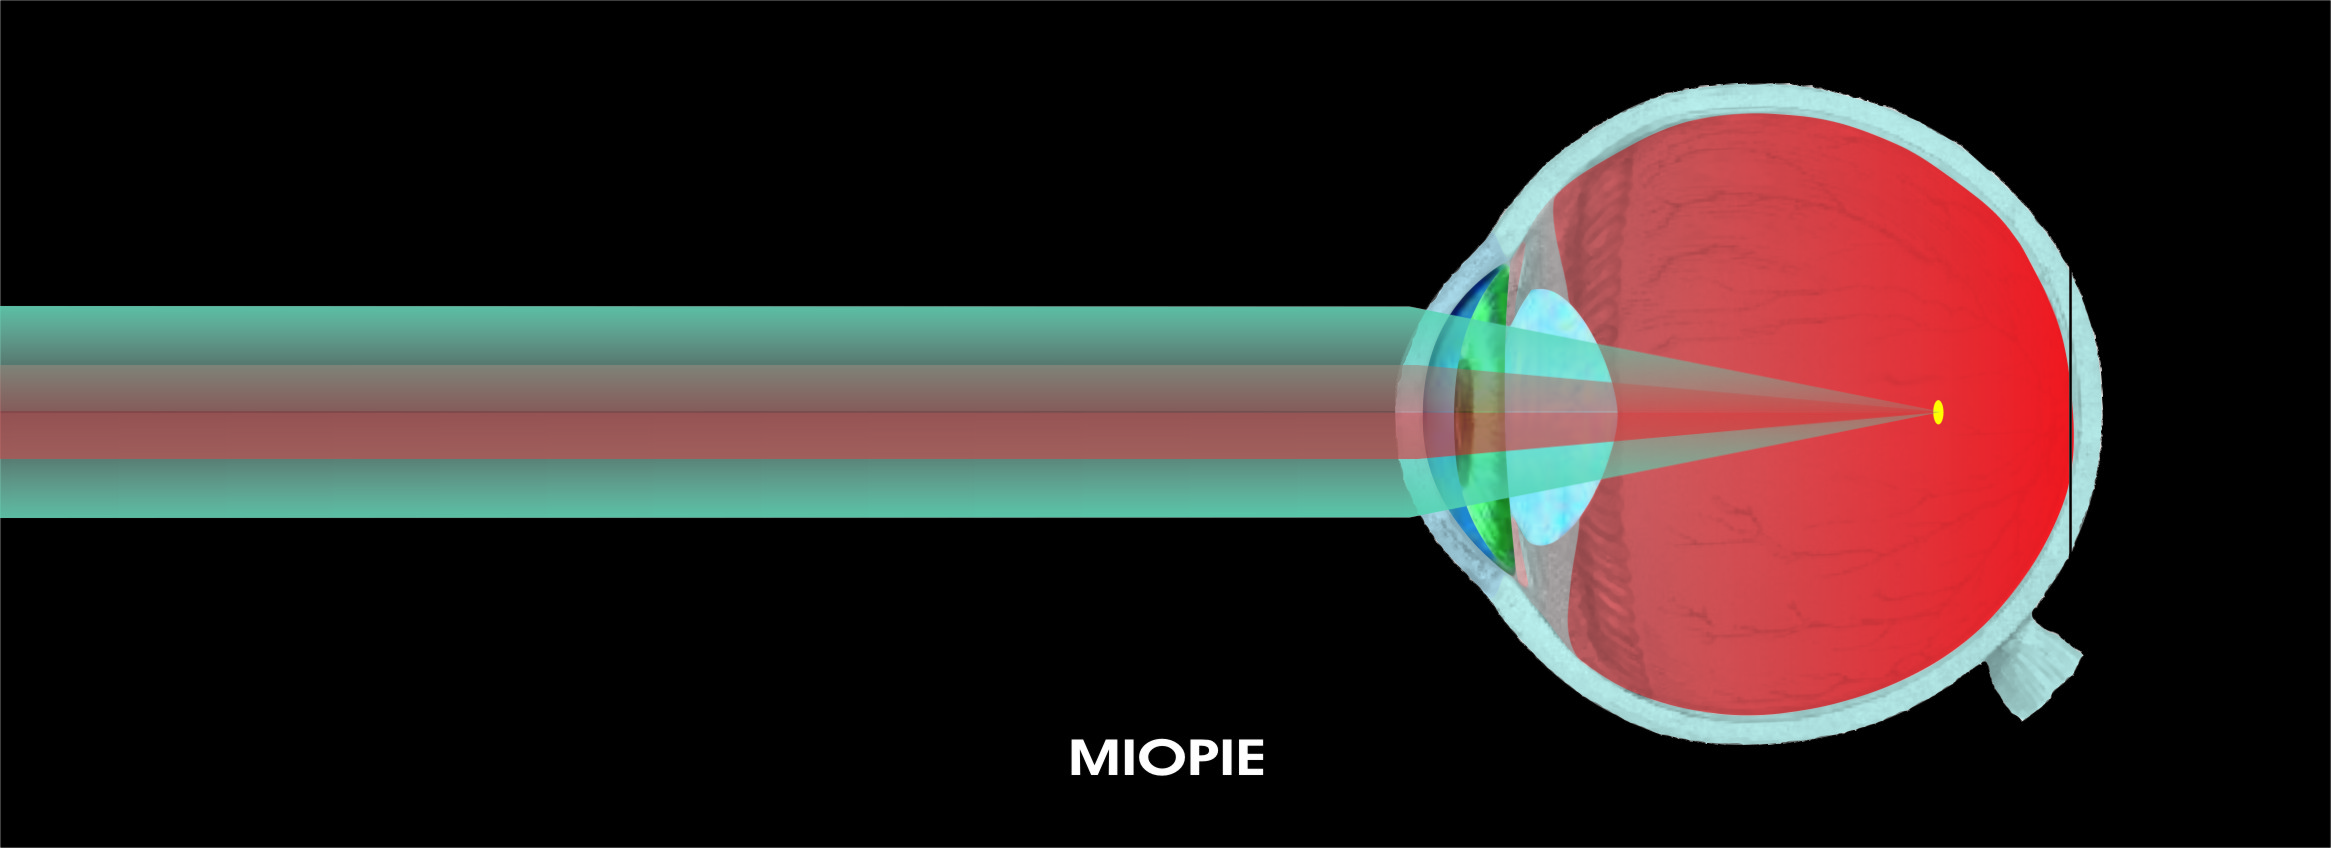 miopia la ochi